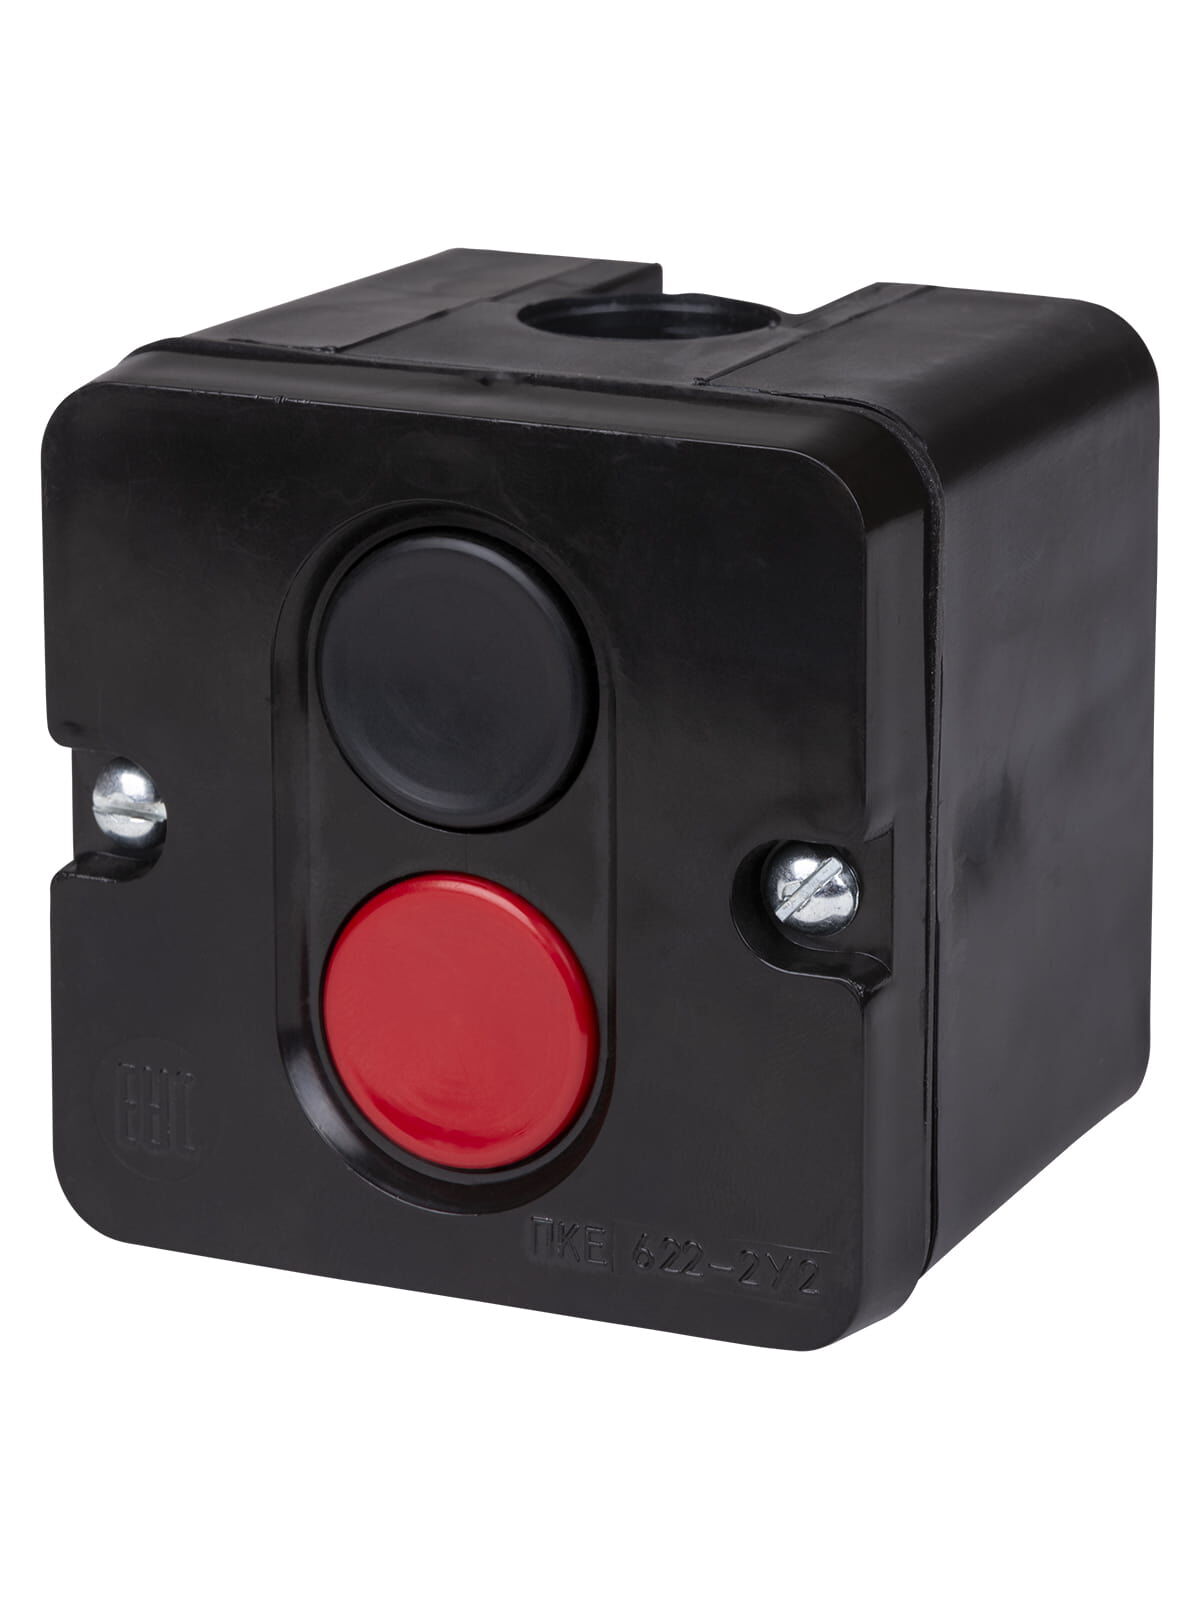 Пост кнопочный ПКЕ 722 У2 красная и черная кнопки, IP54 красная и черная кнопки, IP54